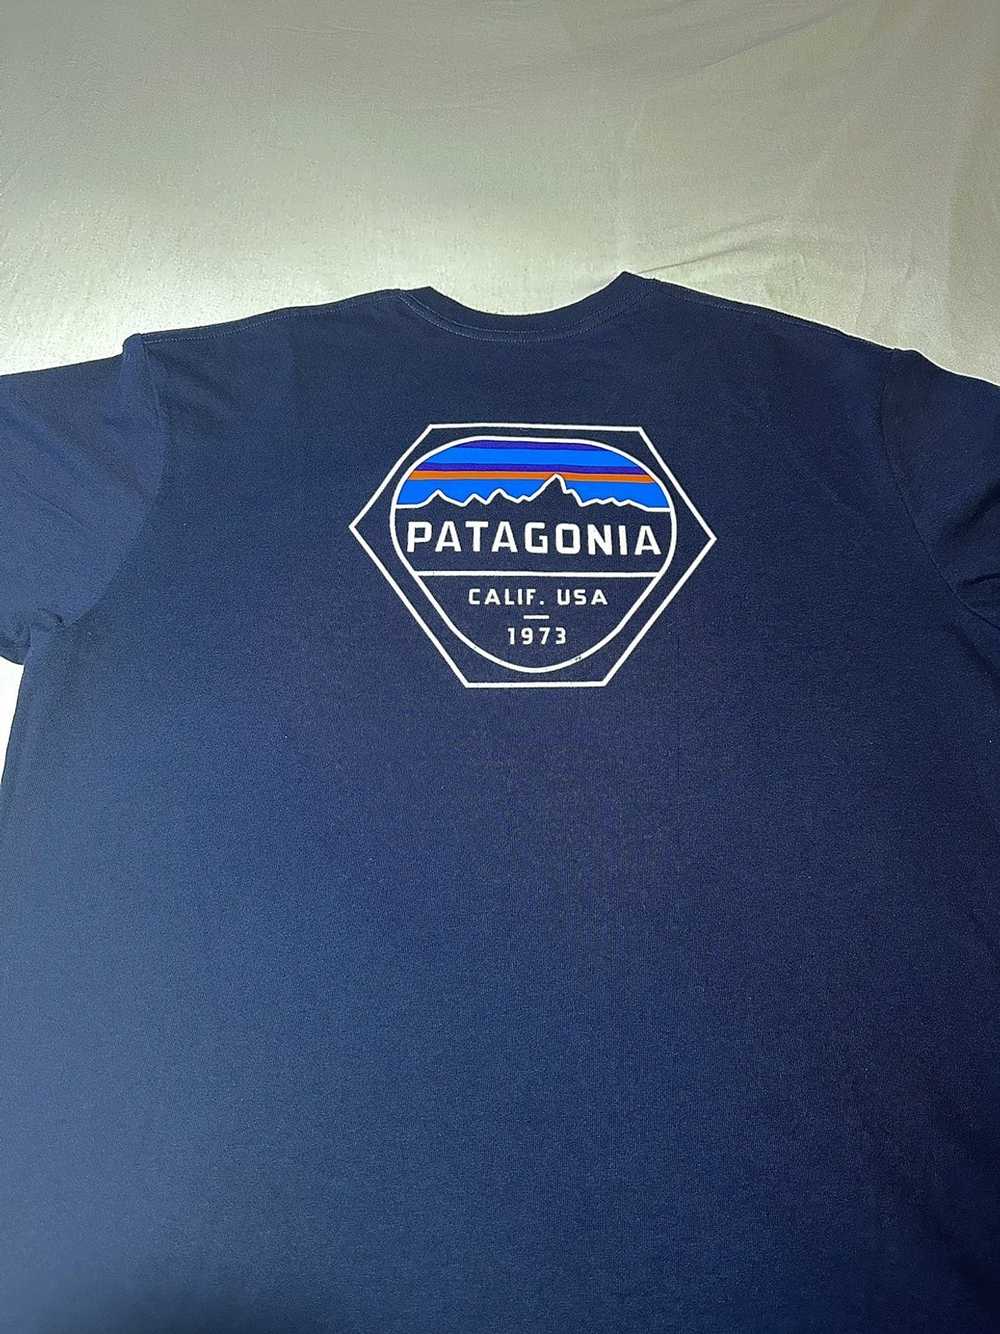 Patagonia Patagonia T Shirt - image 2